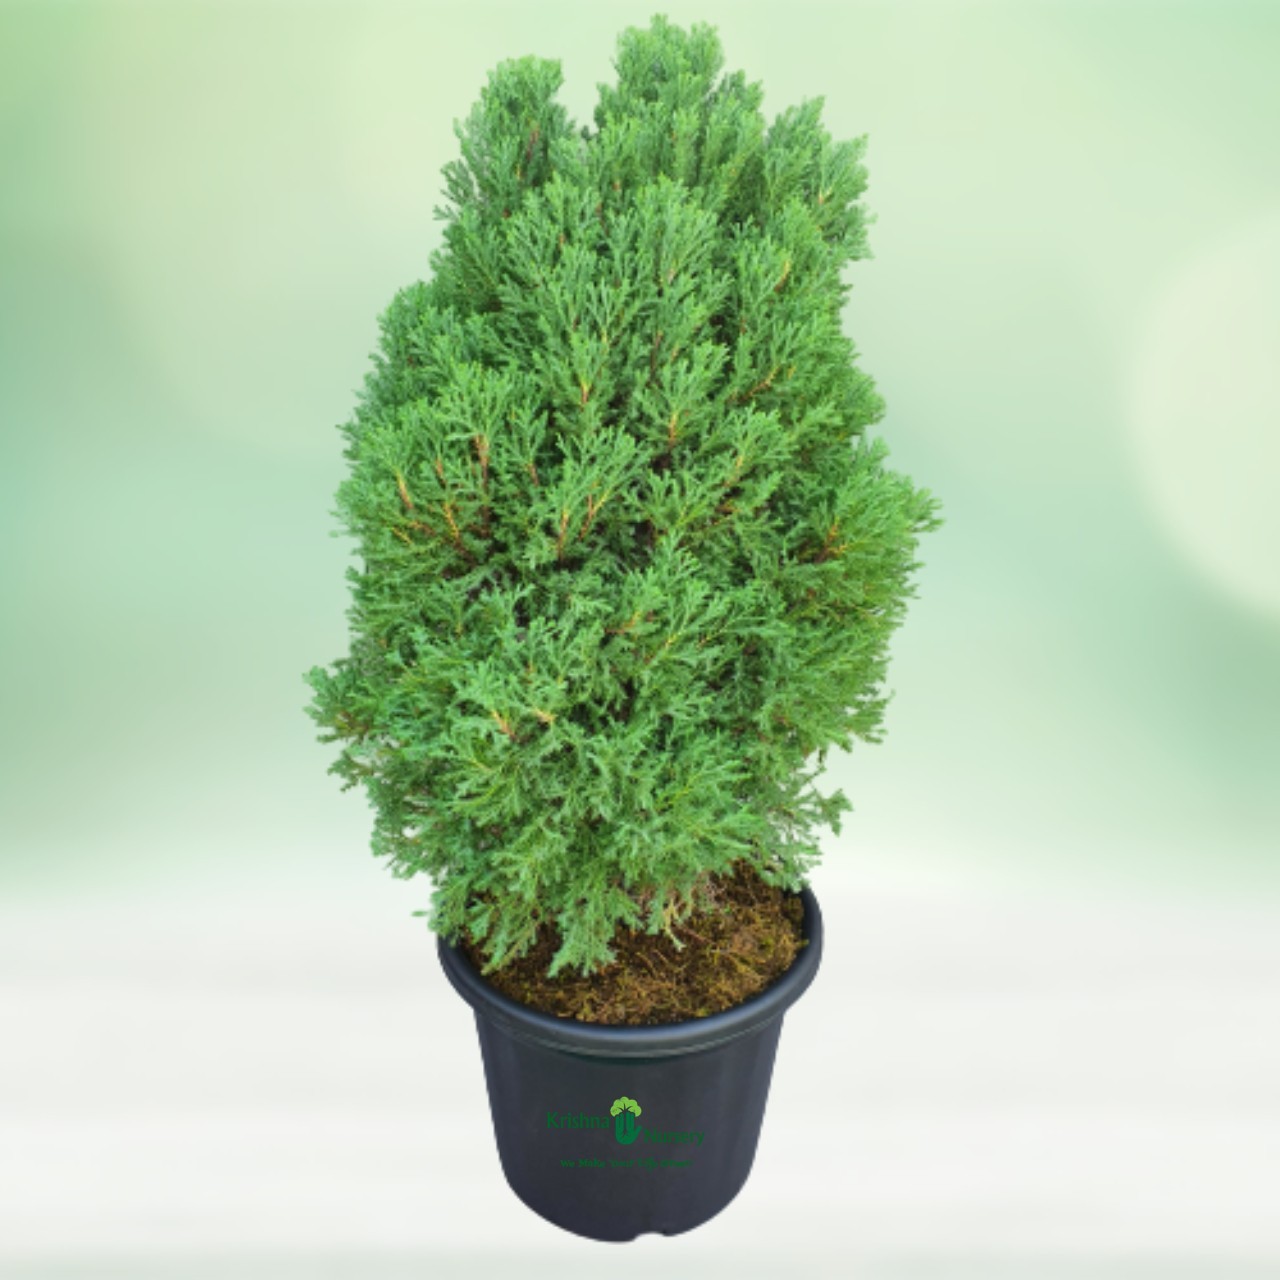 Juniperus Plant - 12 Inch - Black Pot